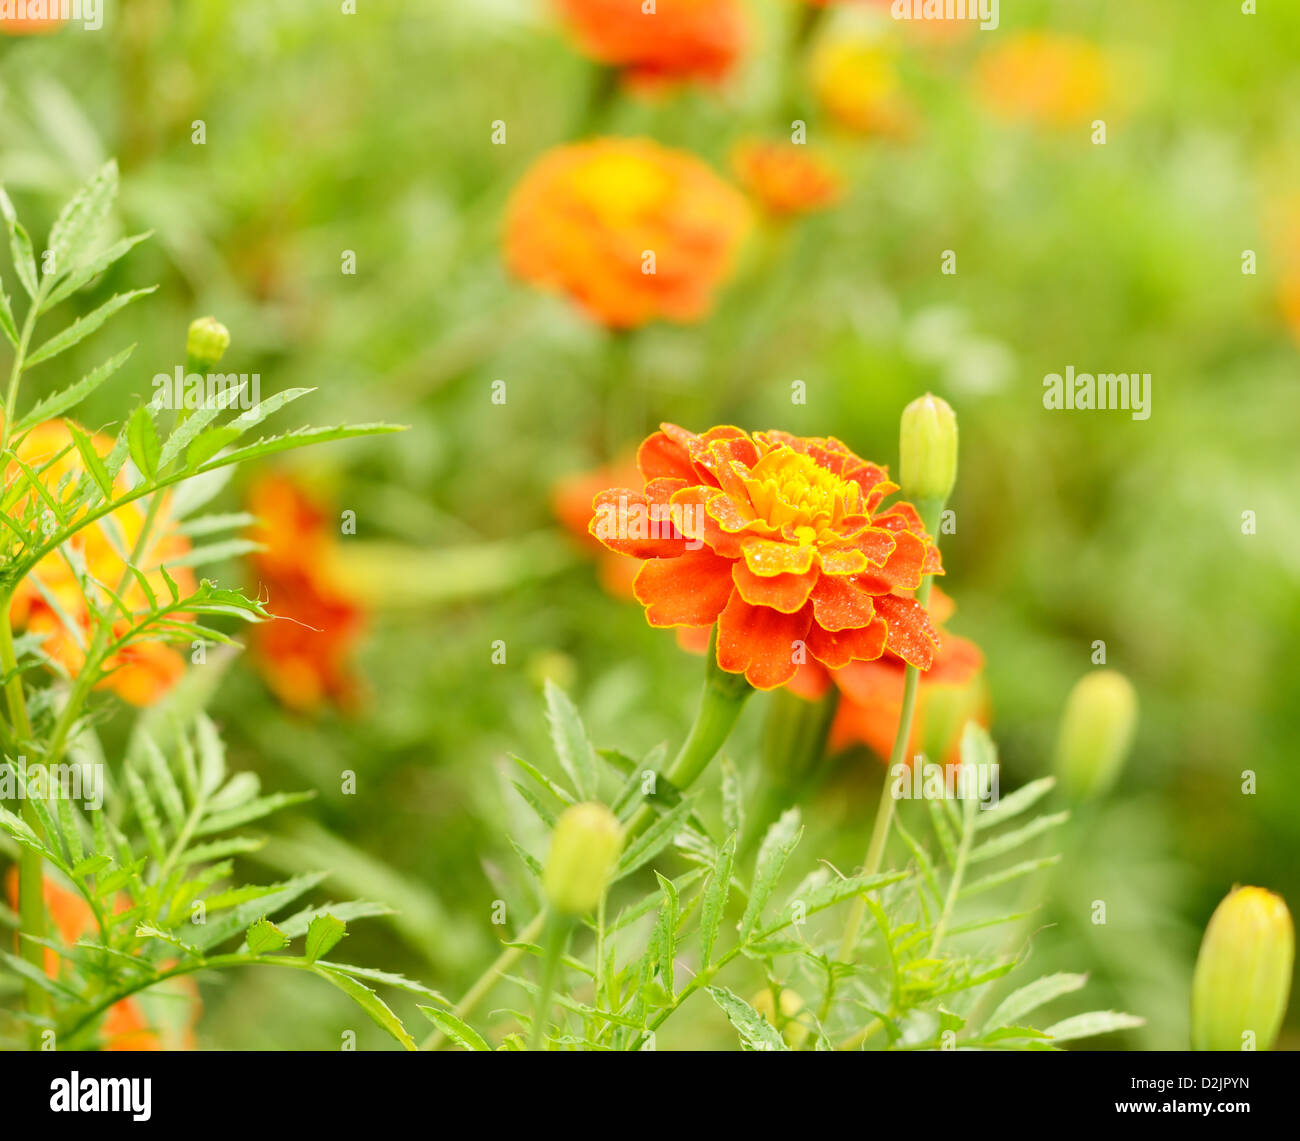 Tagetes fiori di rugiada closeup photo Foto Stock